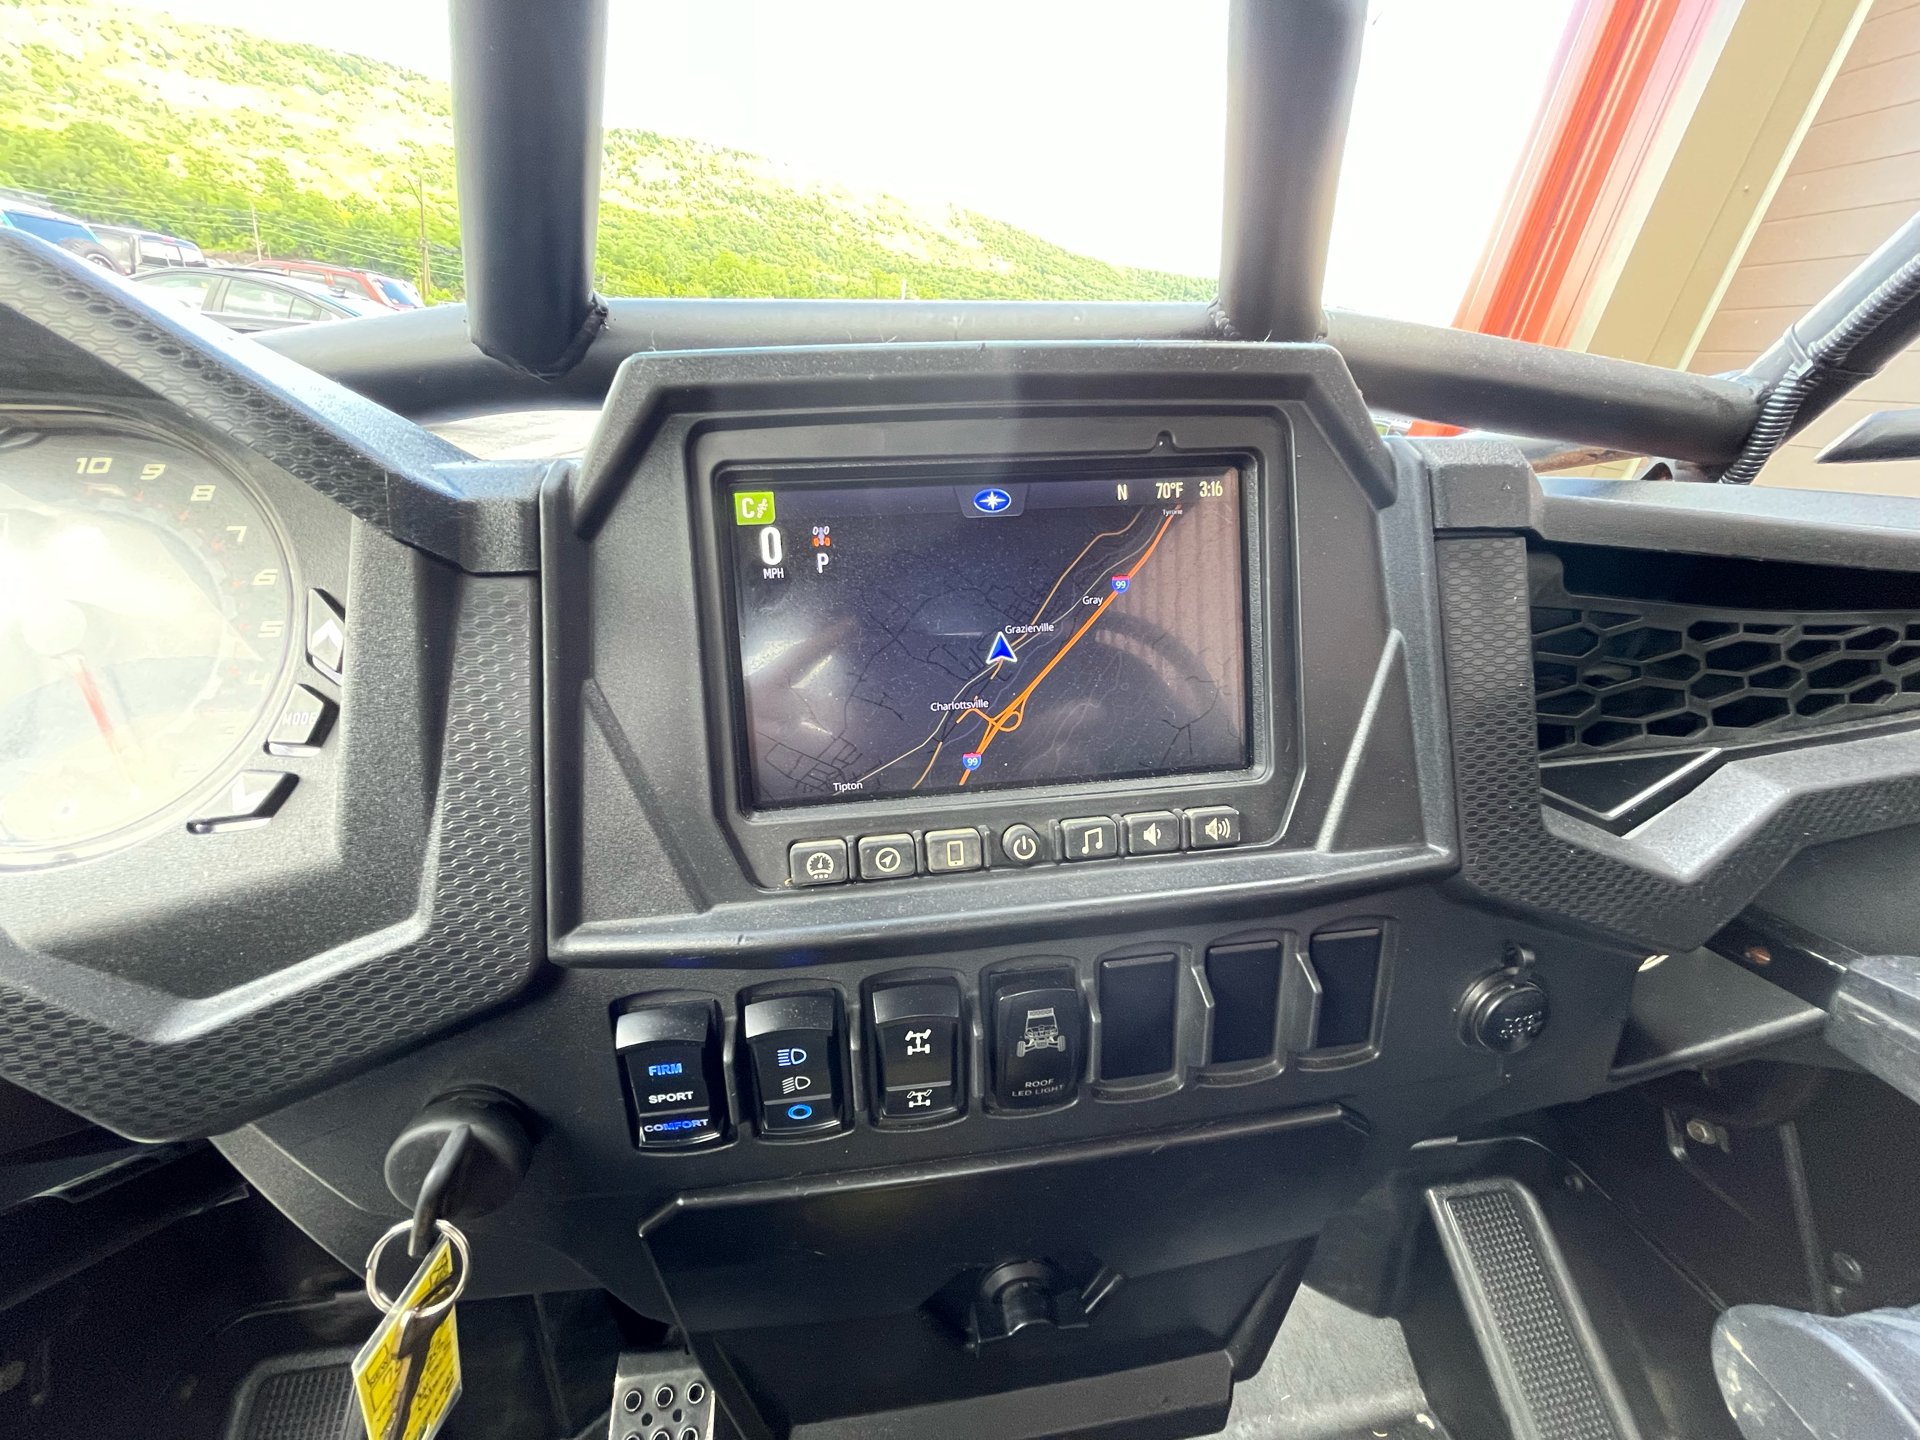 2019 Polaris RZR XP Turbo S in Tyrone, Pennsylvania - Photo 10